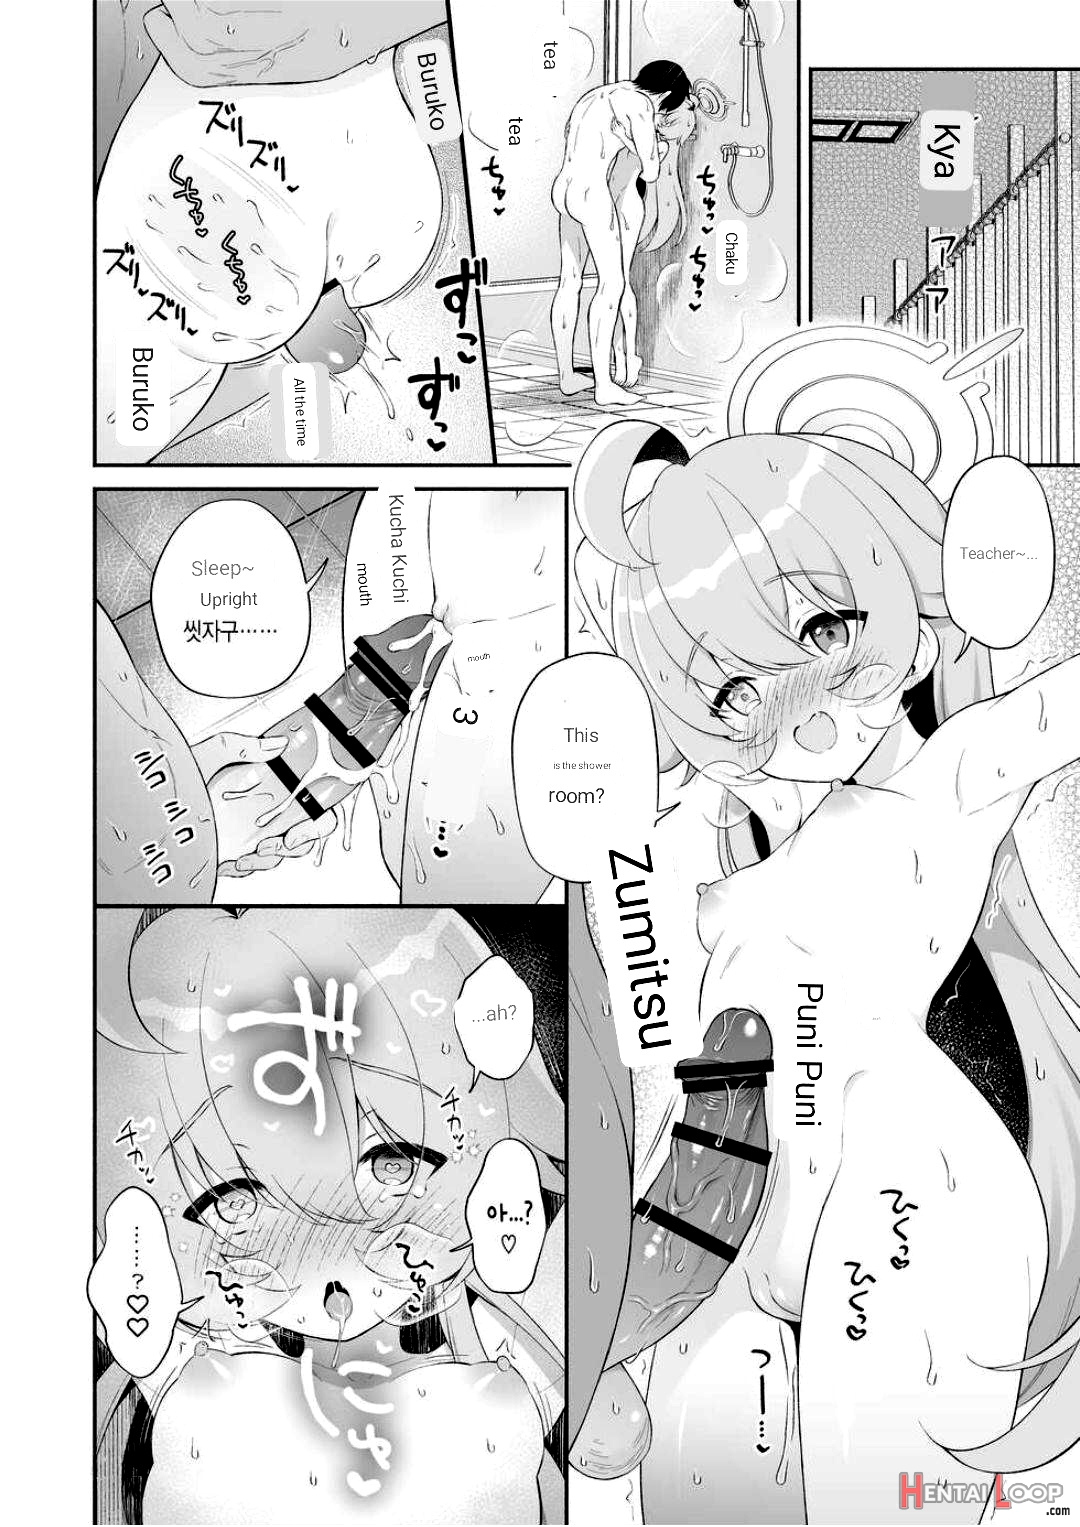 Torokeru Hoshino page 21